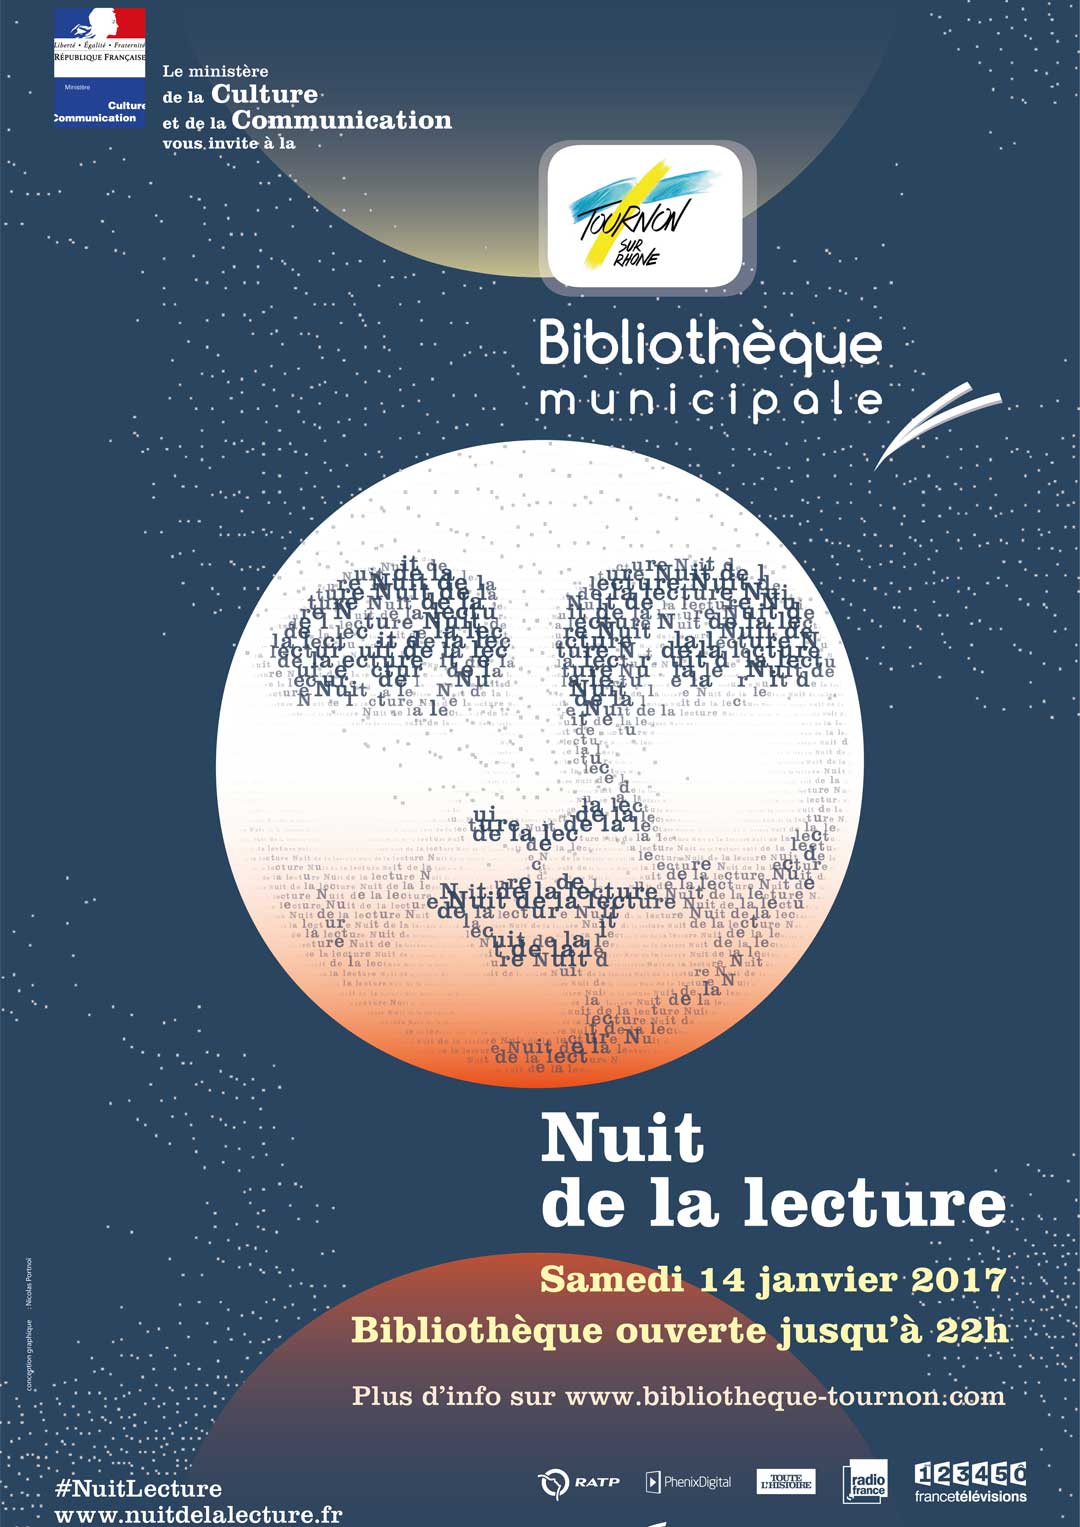 Nuit de la lecture. Bibliothèque municipale - samedi 14 janvier de 17h à 22h